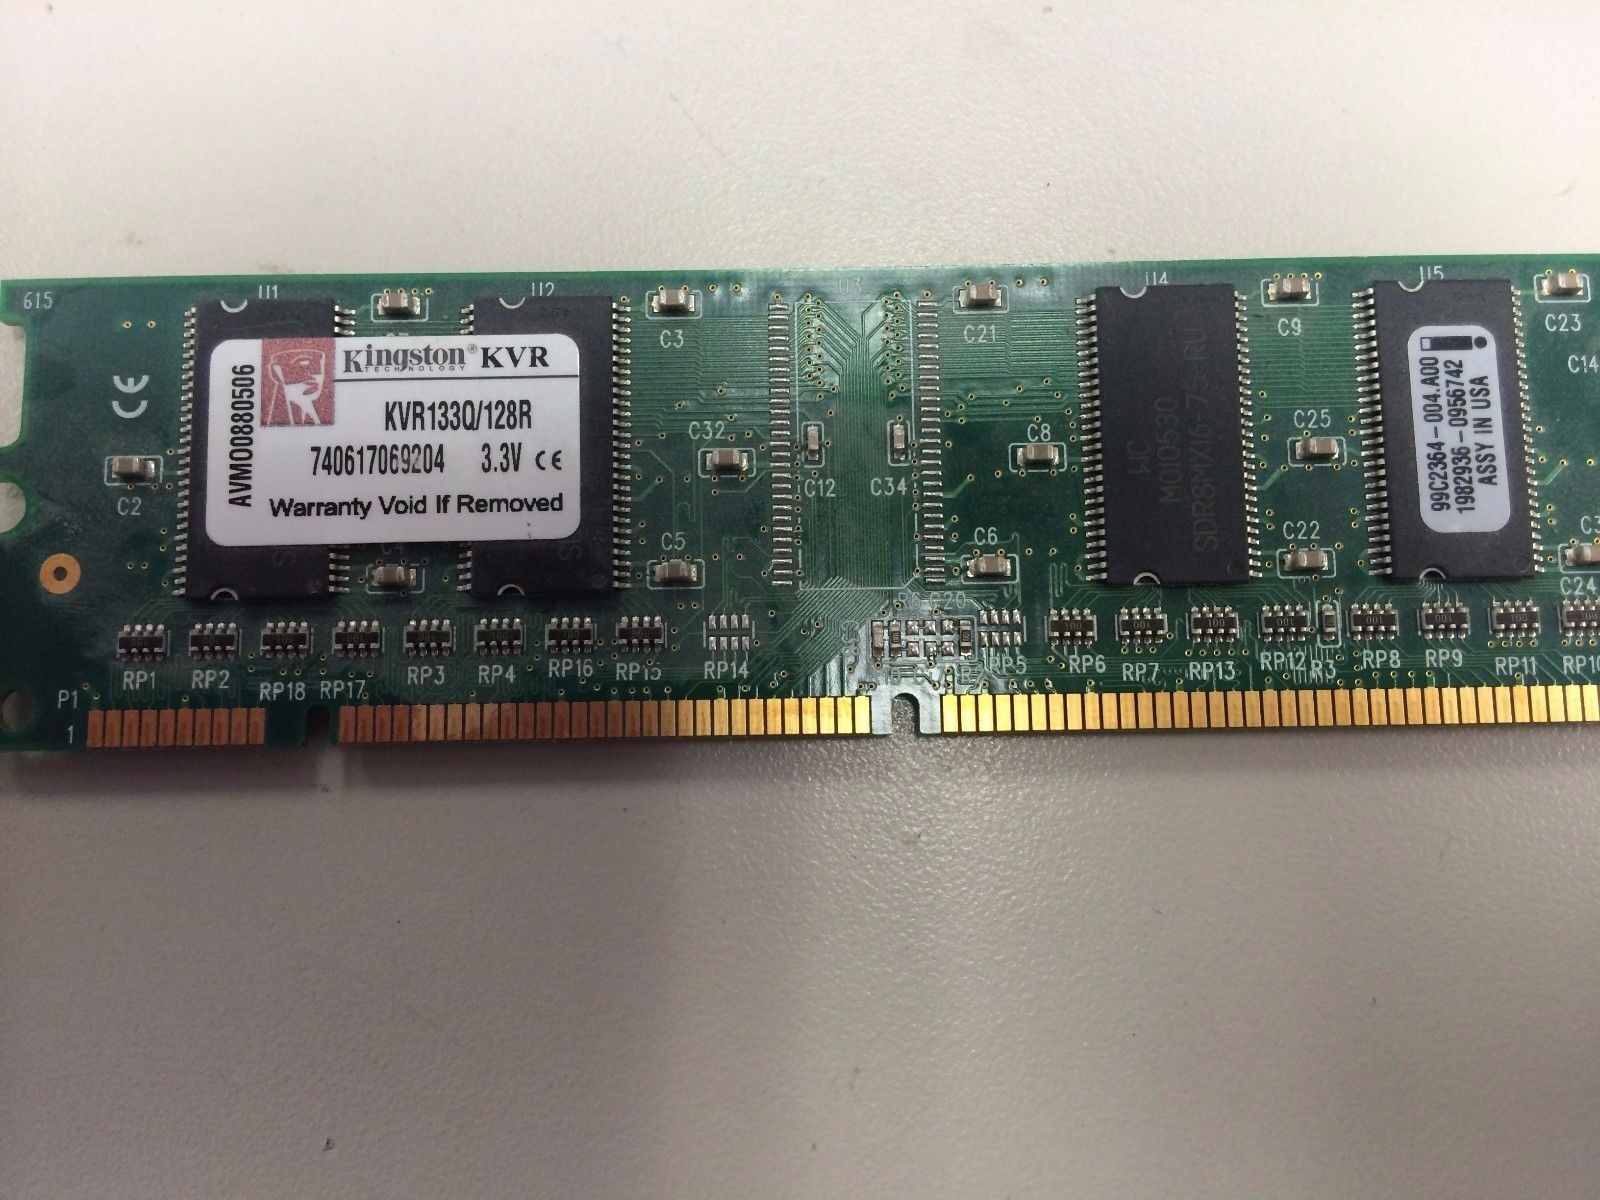 Kingston KVR133Q/128R 740617069204 3.3V RAM Memory